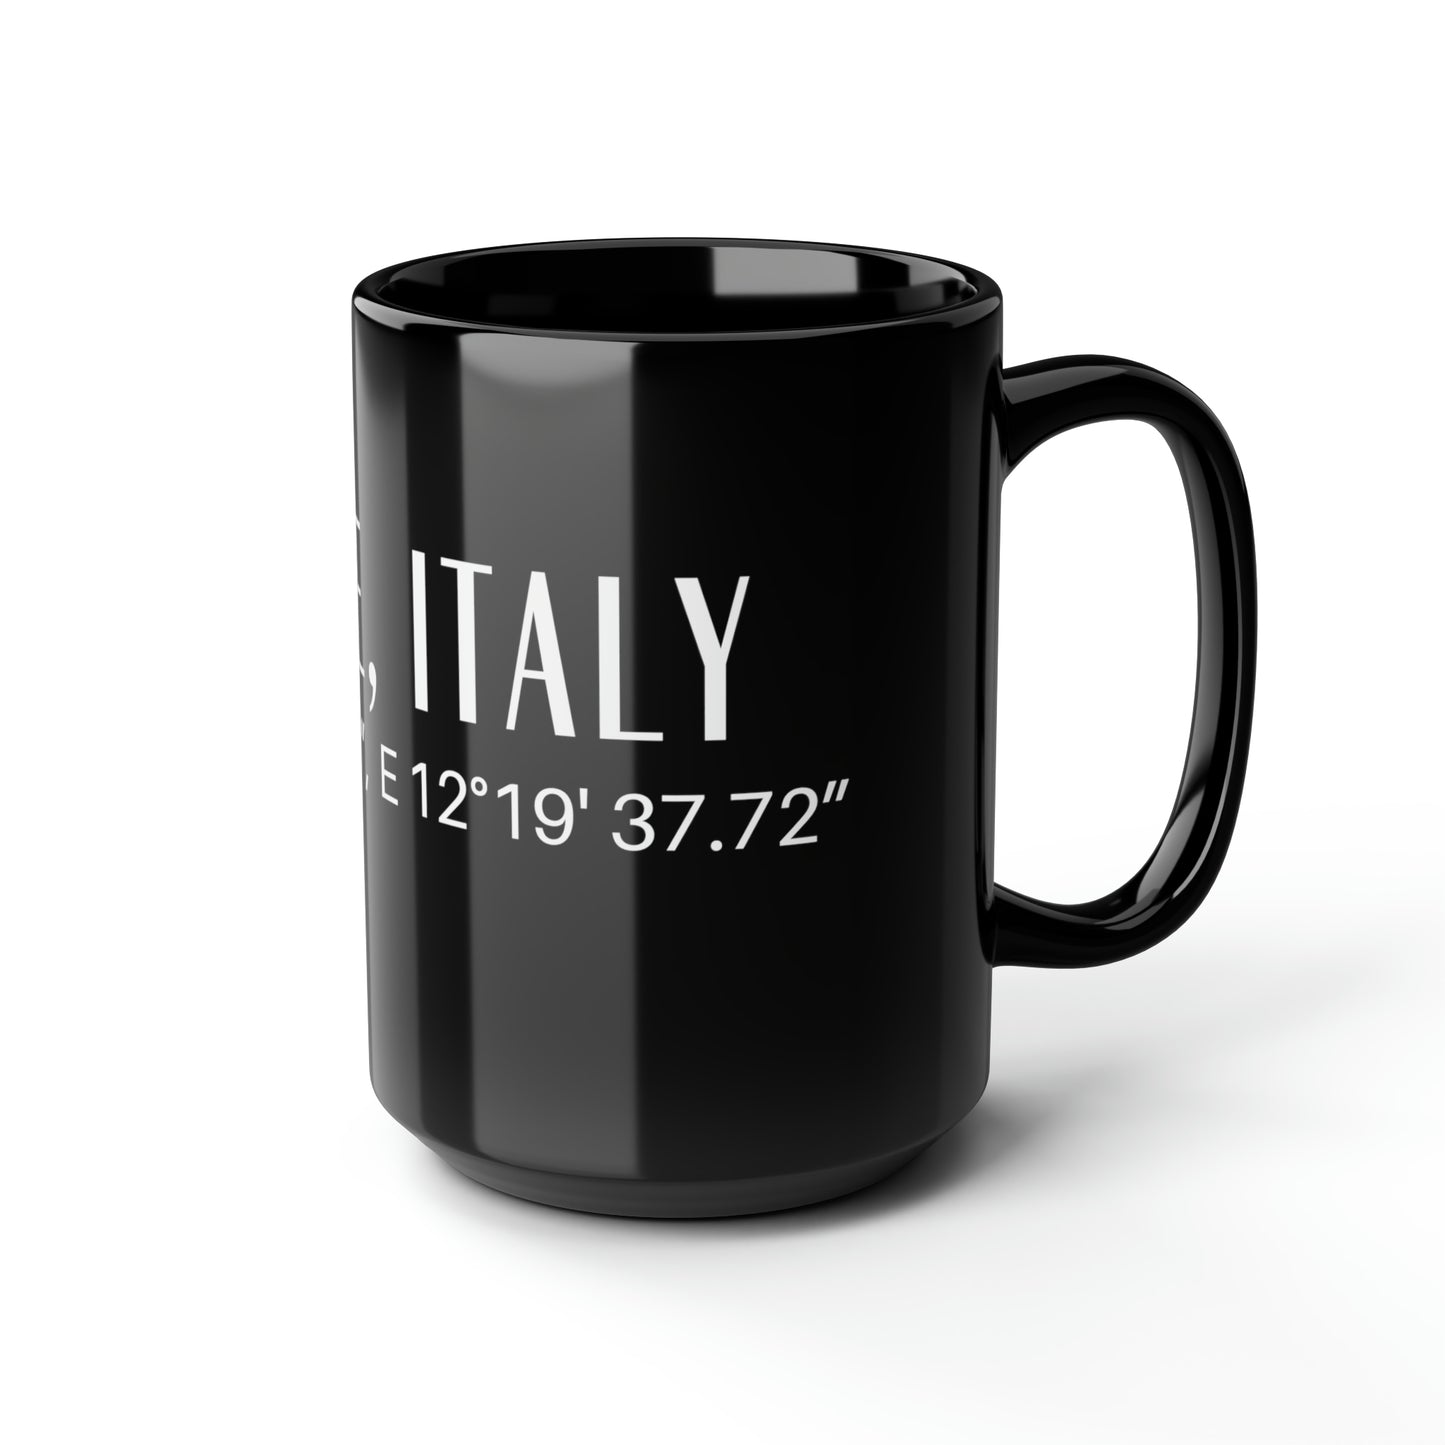 Venice, Italy Mug